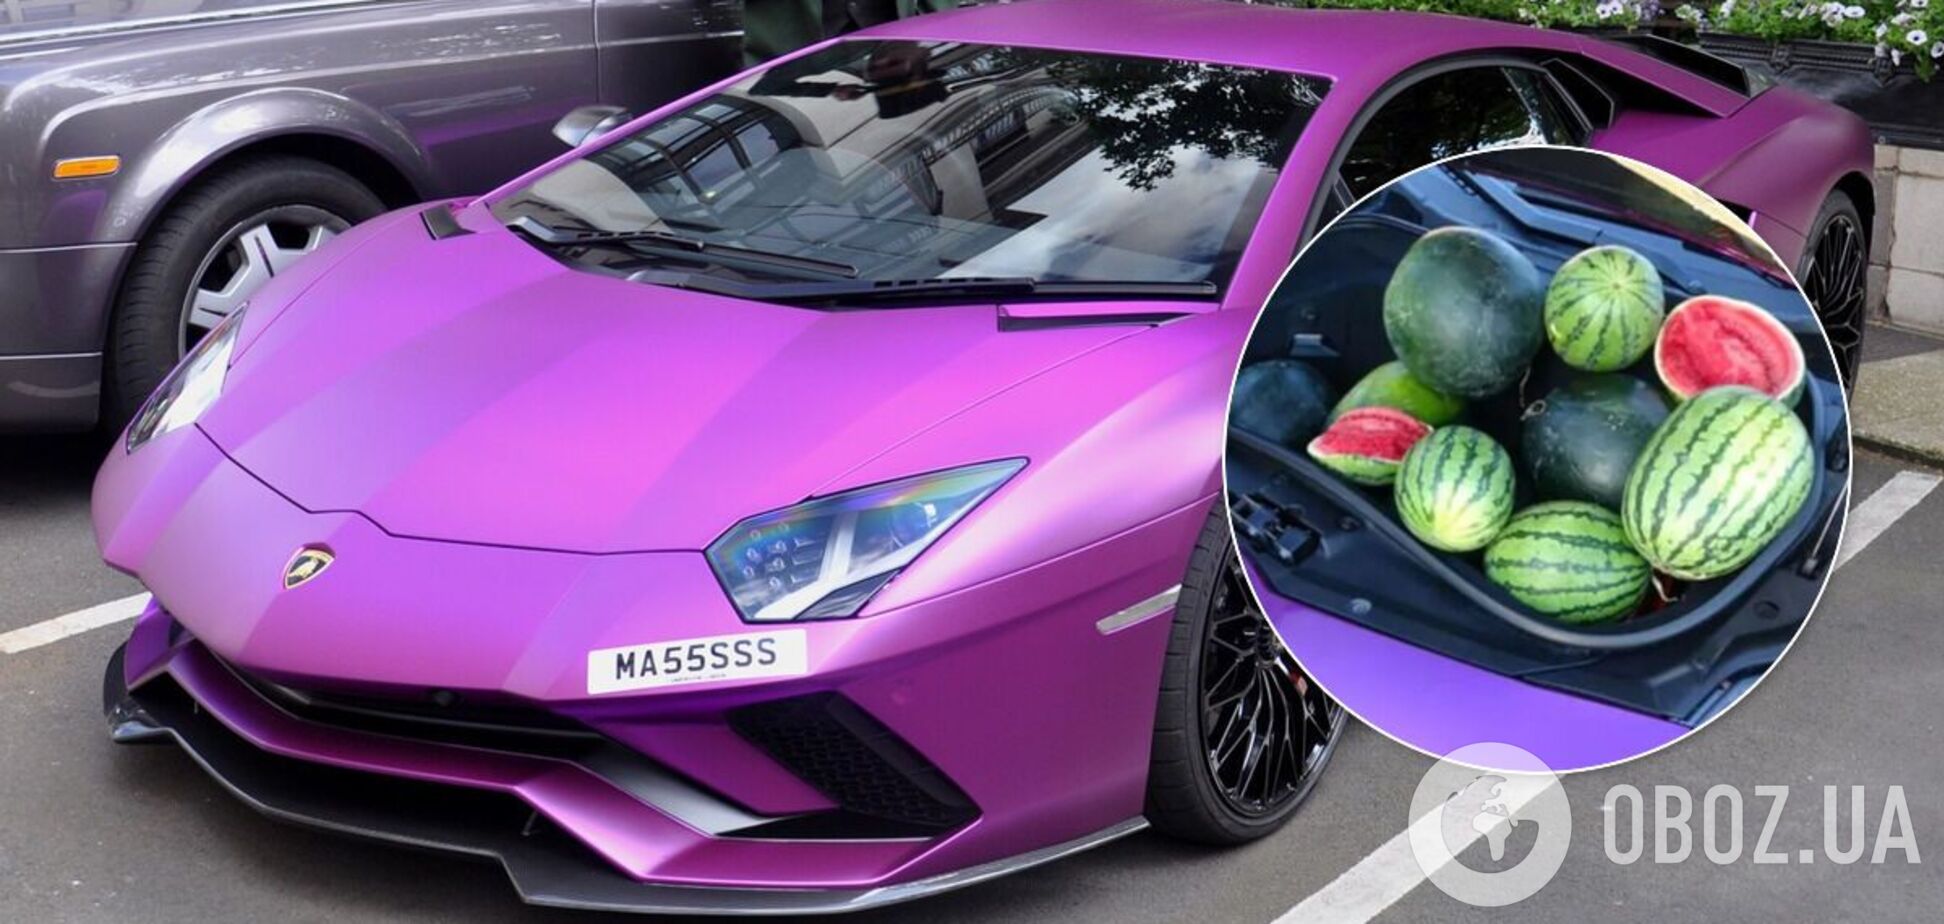 Фиолетовый Lamborghini привлек внимание покупателей